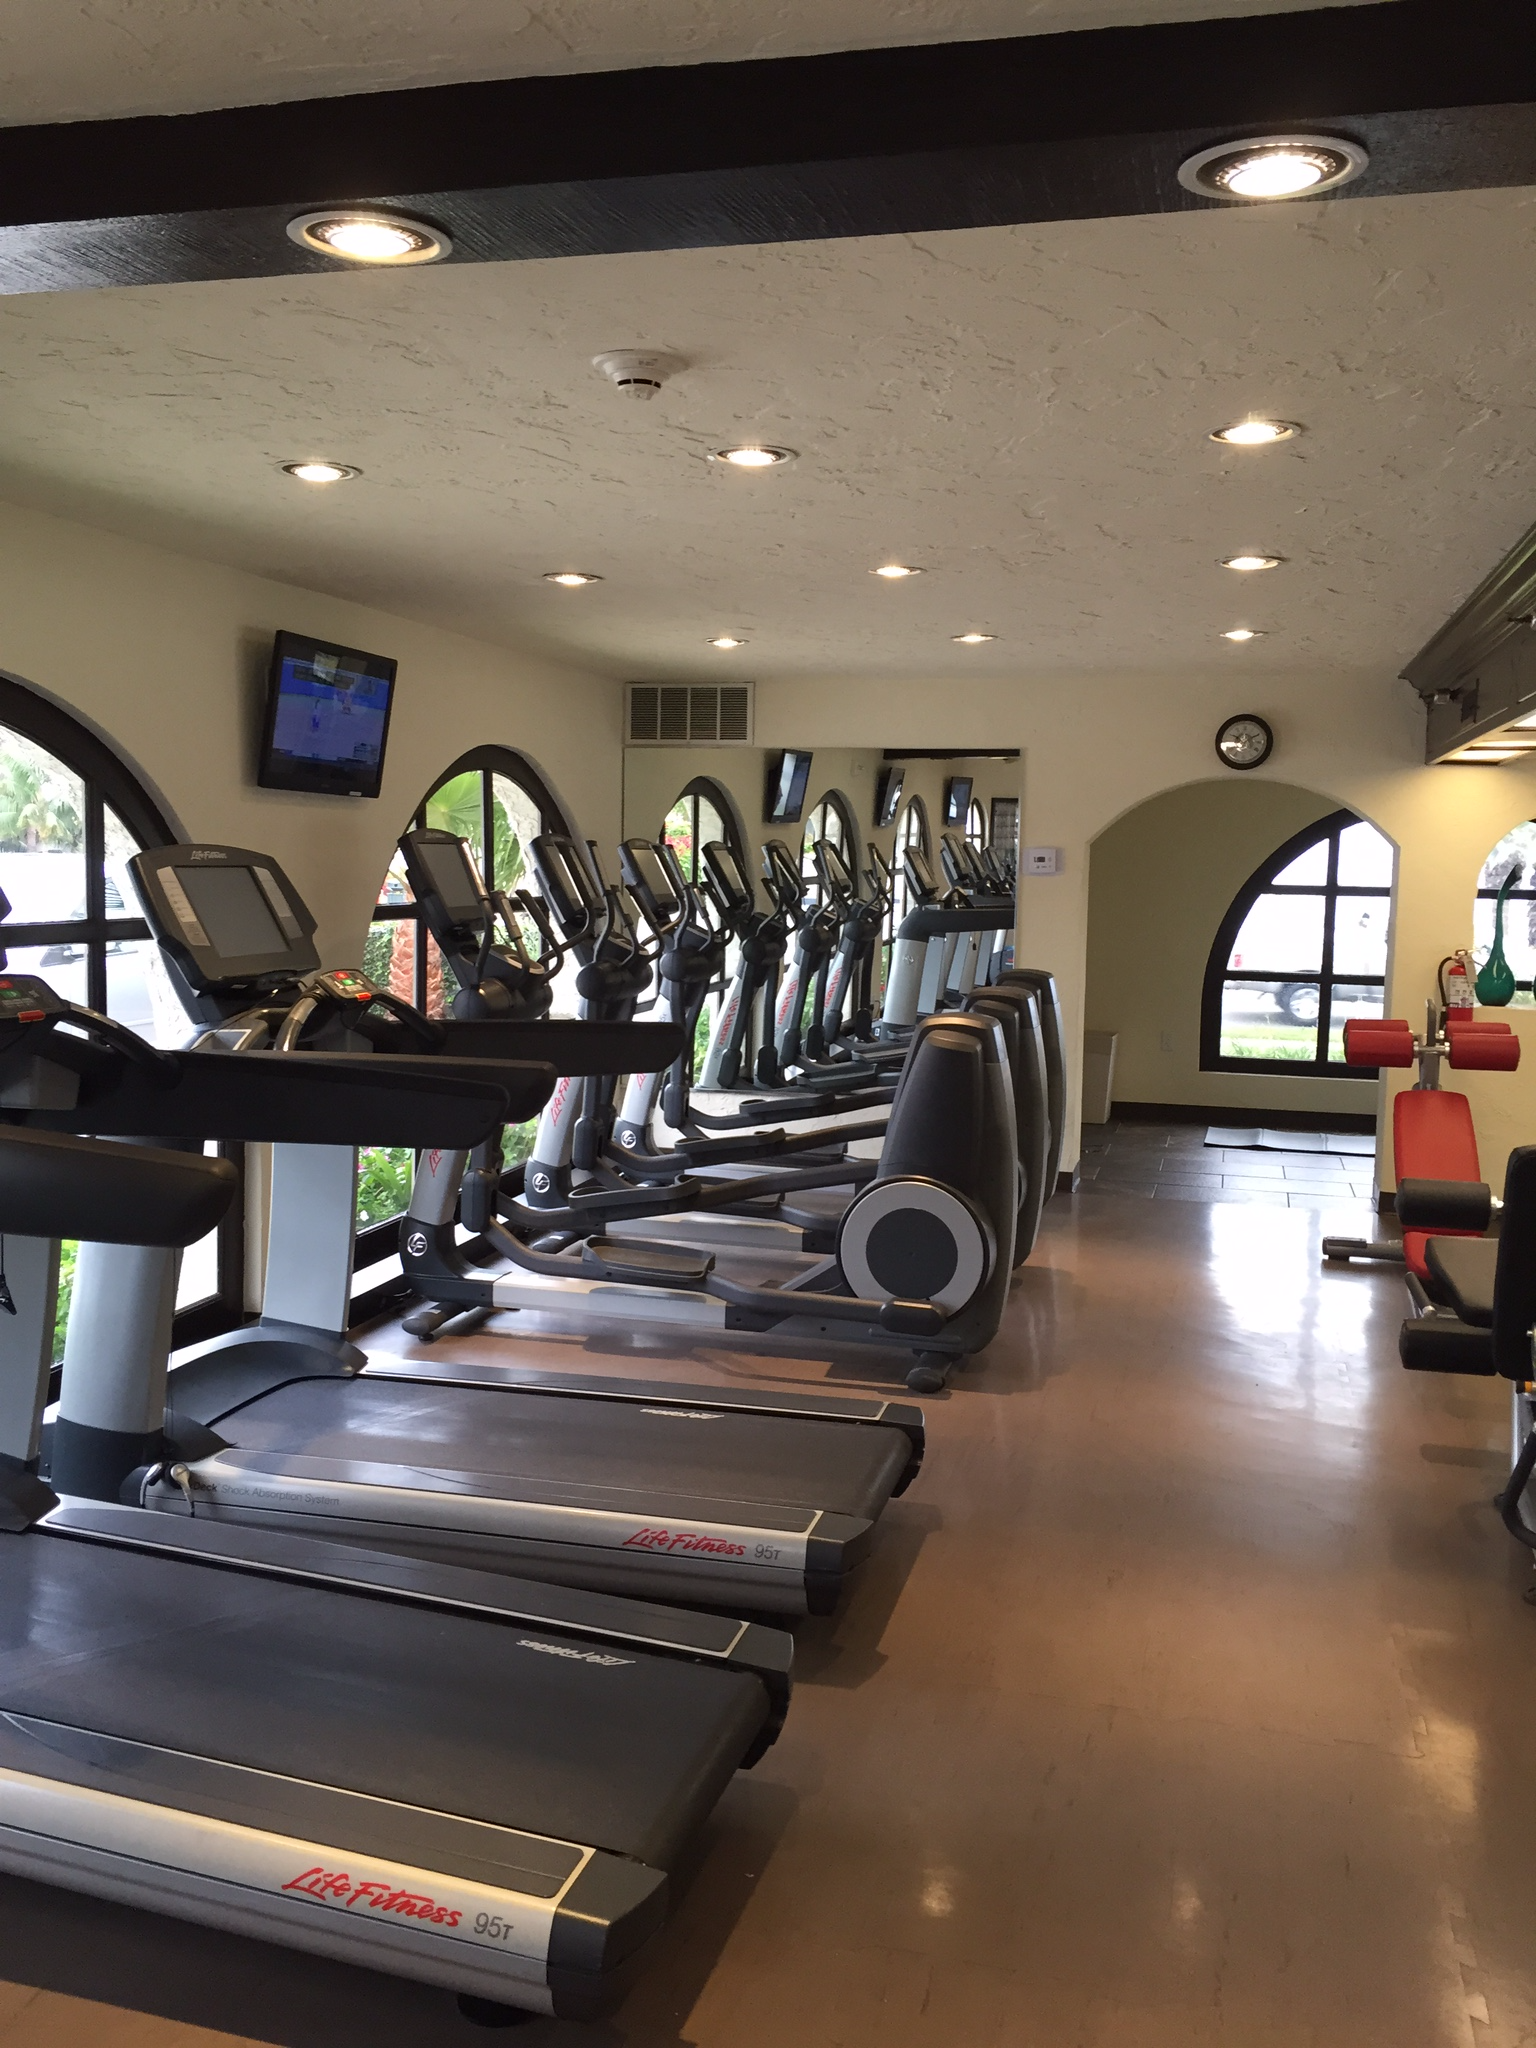 Hyatt Santa Barbara gym facility